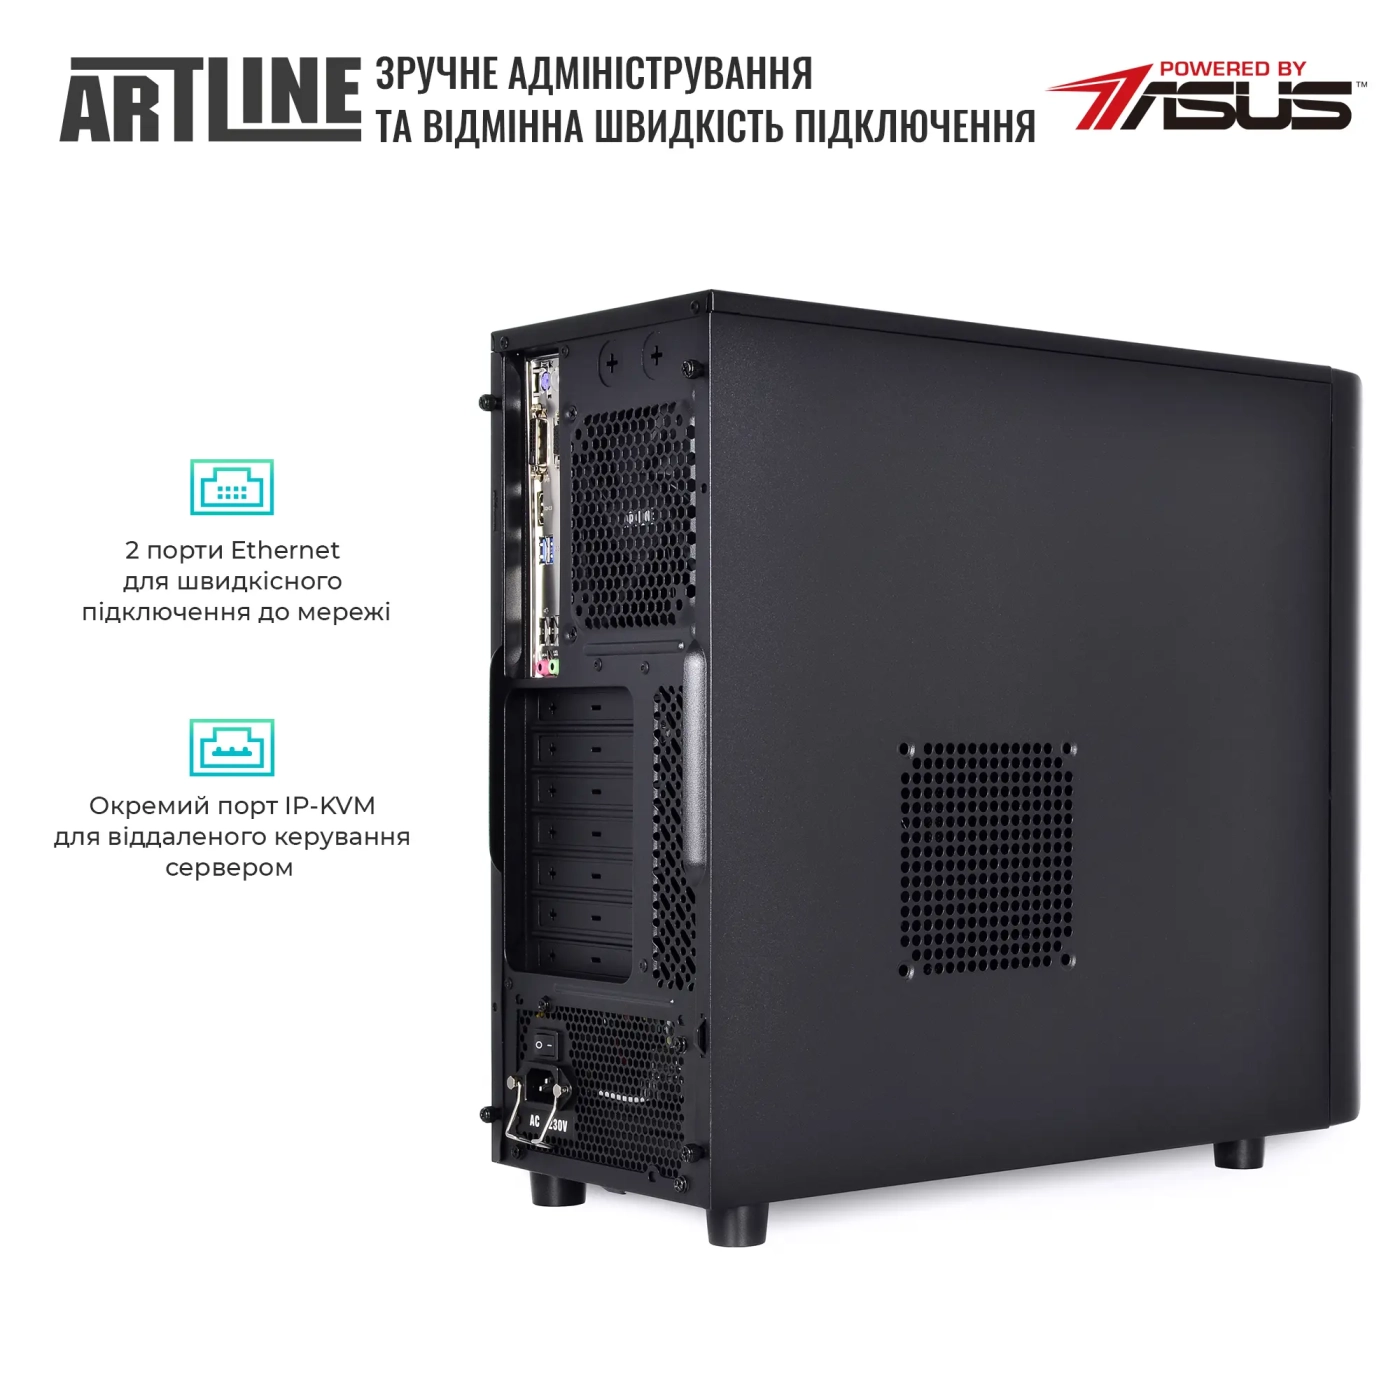 Купить Сервер ARTLINE Business T37 (T37v38) - фото 5